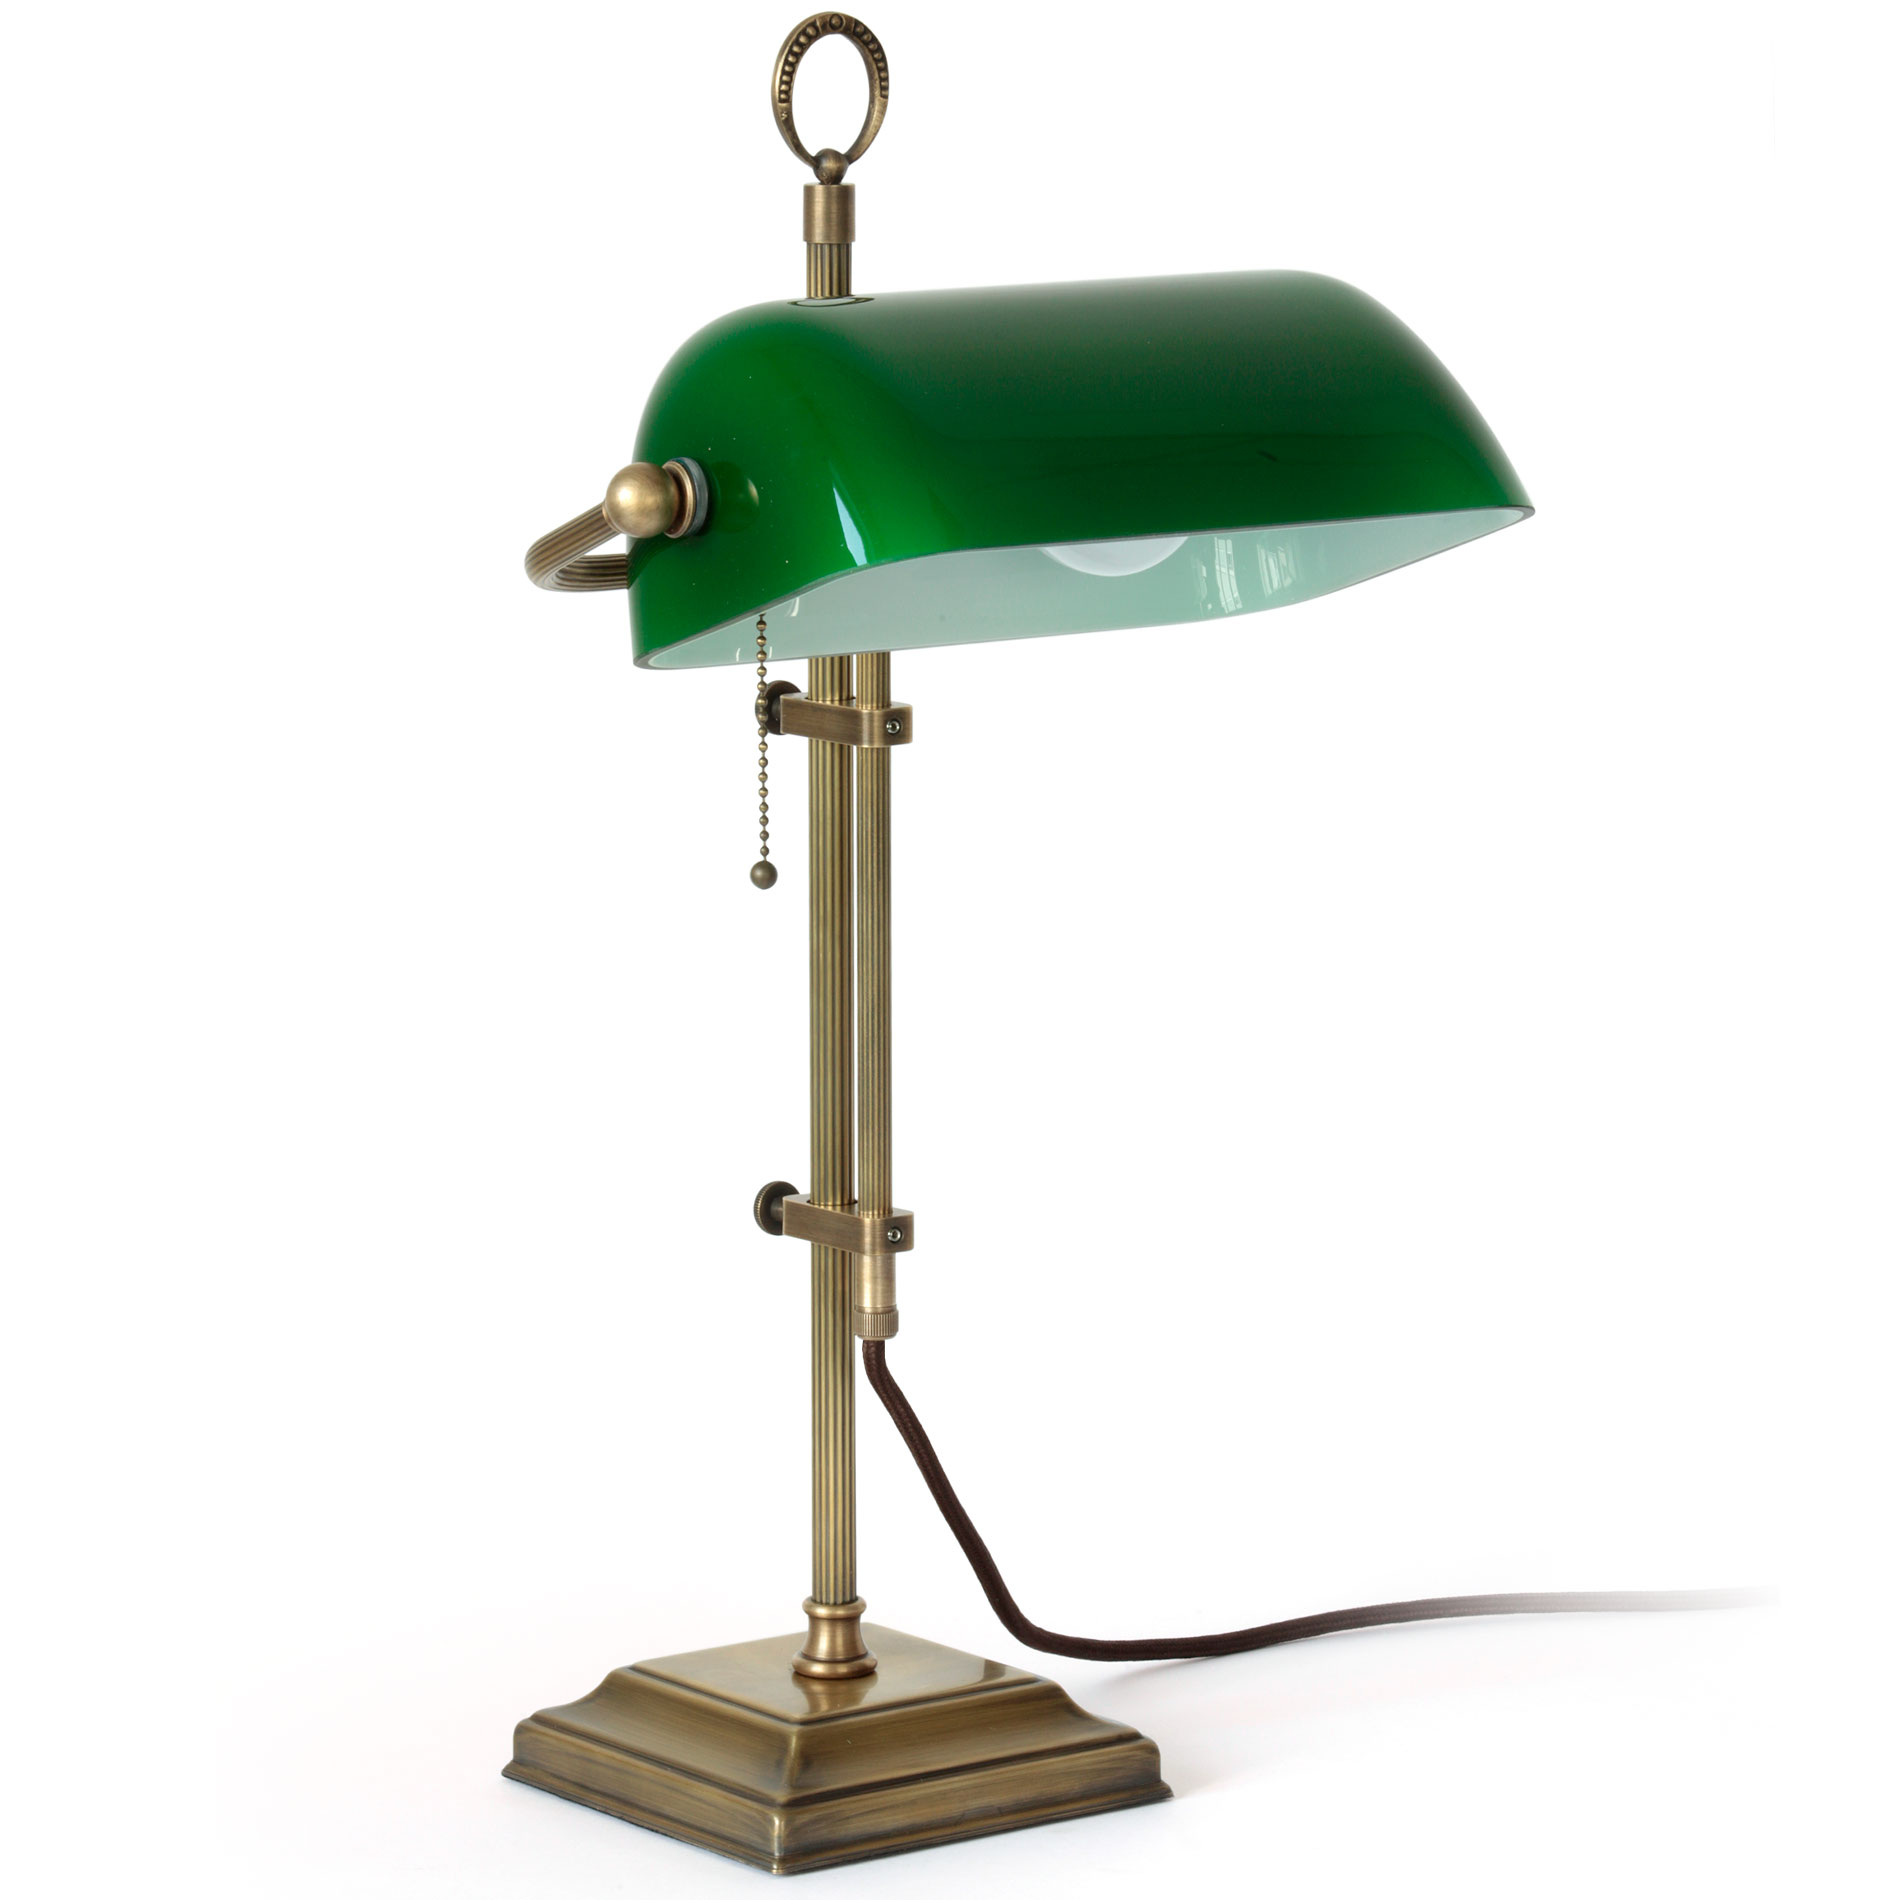 Banker’s Lamp – klassische Schreibtischleuchte mit Glasschirm: Banker’s Lamp: eine klassische Tischleuchte (hier Glasschirm in Grün, Messing antik handpatiniert, kanneliert)